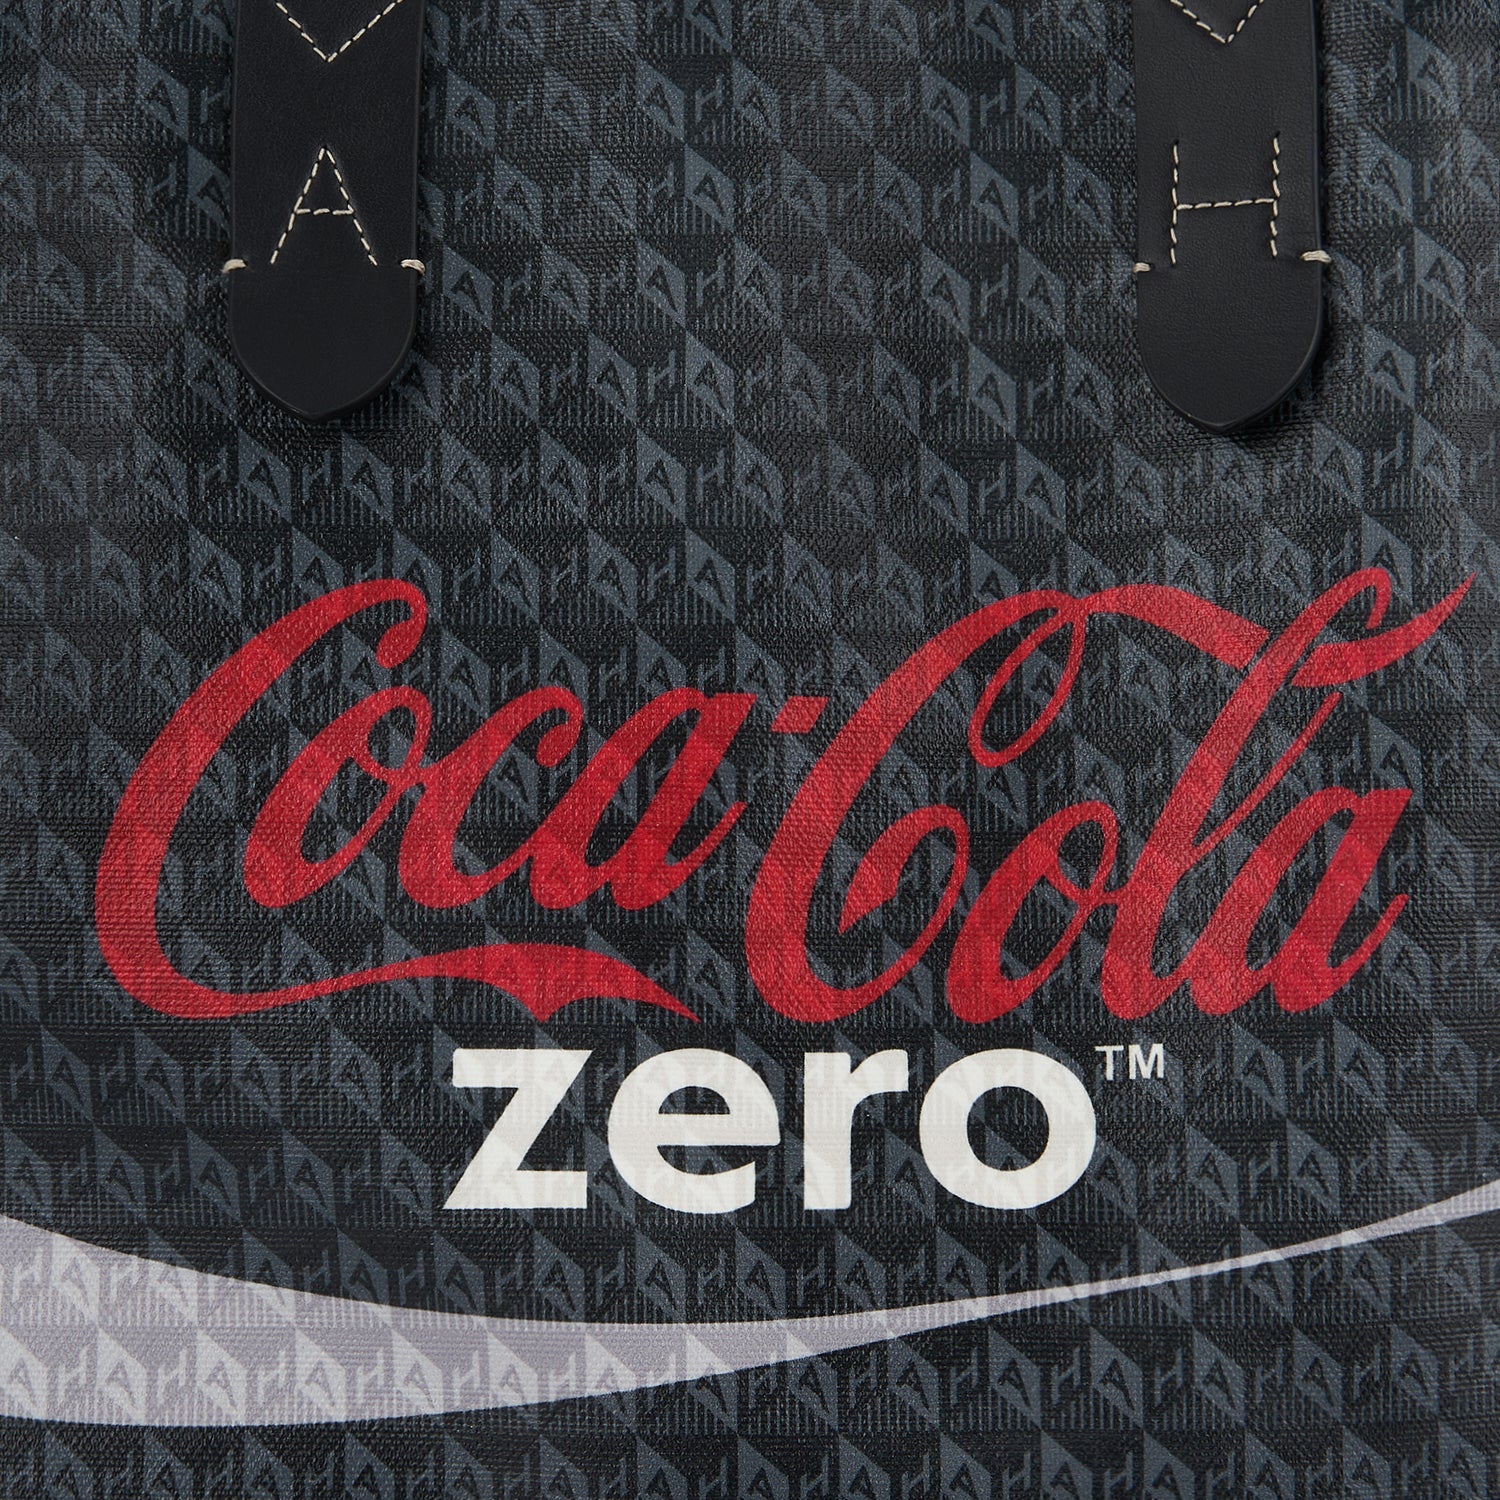 Anya Brands Coke Zero Shopper